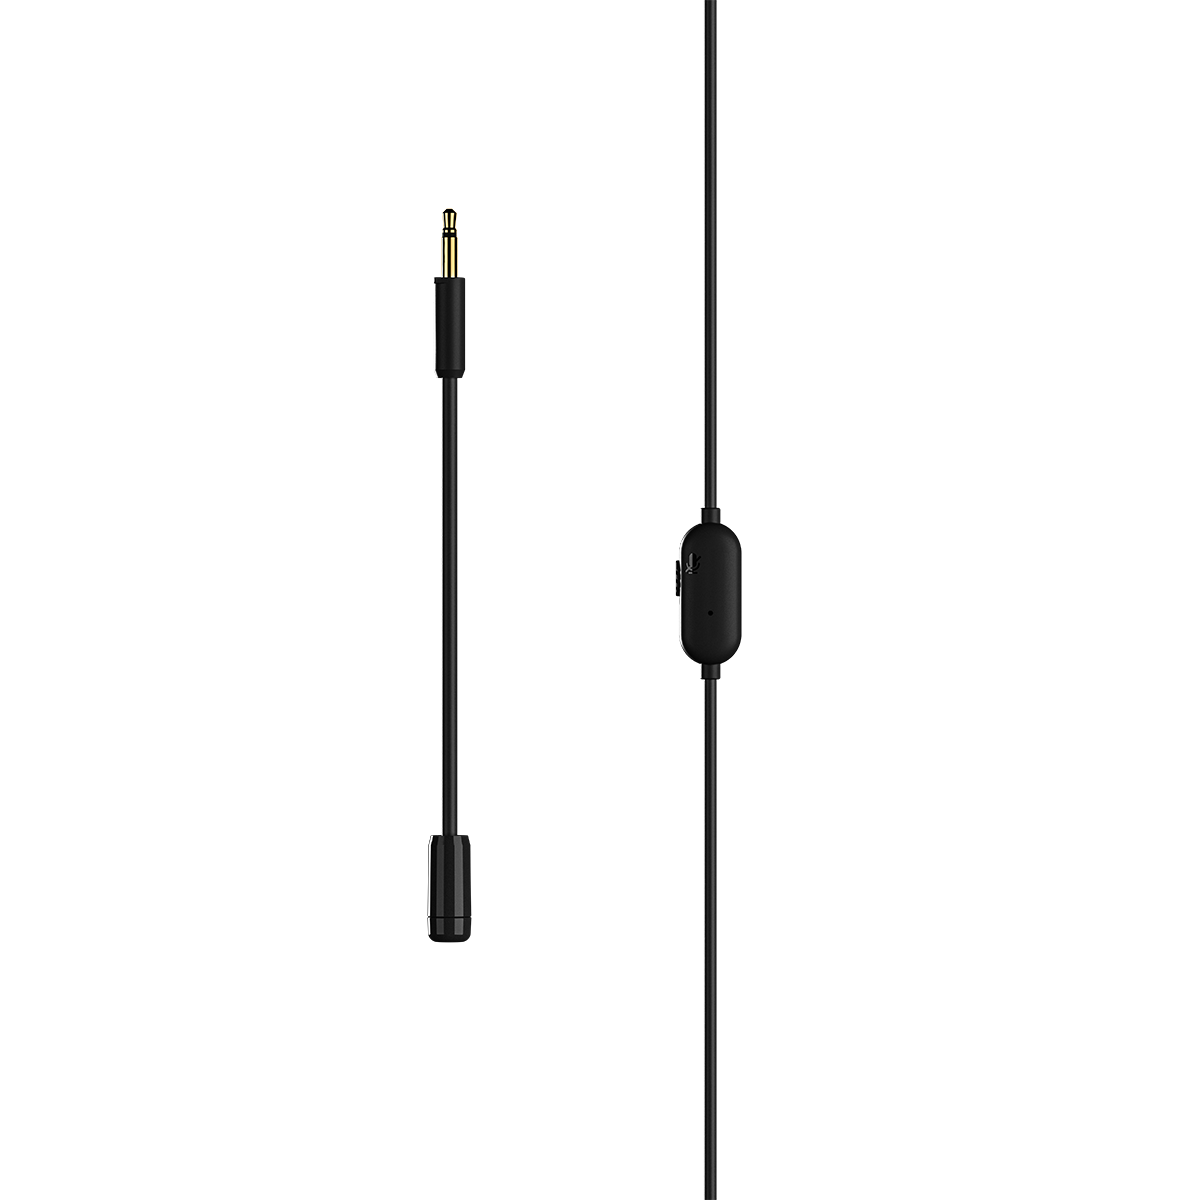 Tai nghe gaming nhét tai SteelSeries Tusq màu đen, jack cắm 3.5mm, phù hợp với nhiều thiết bị, Hàng chính hãng, Bảo hành 1 năm